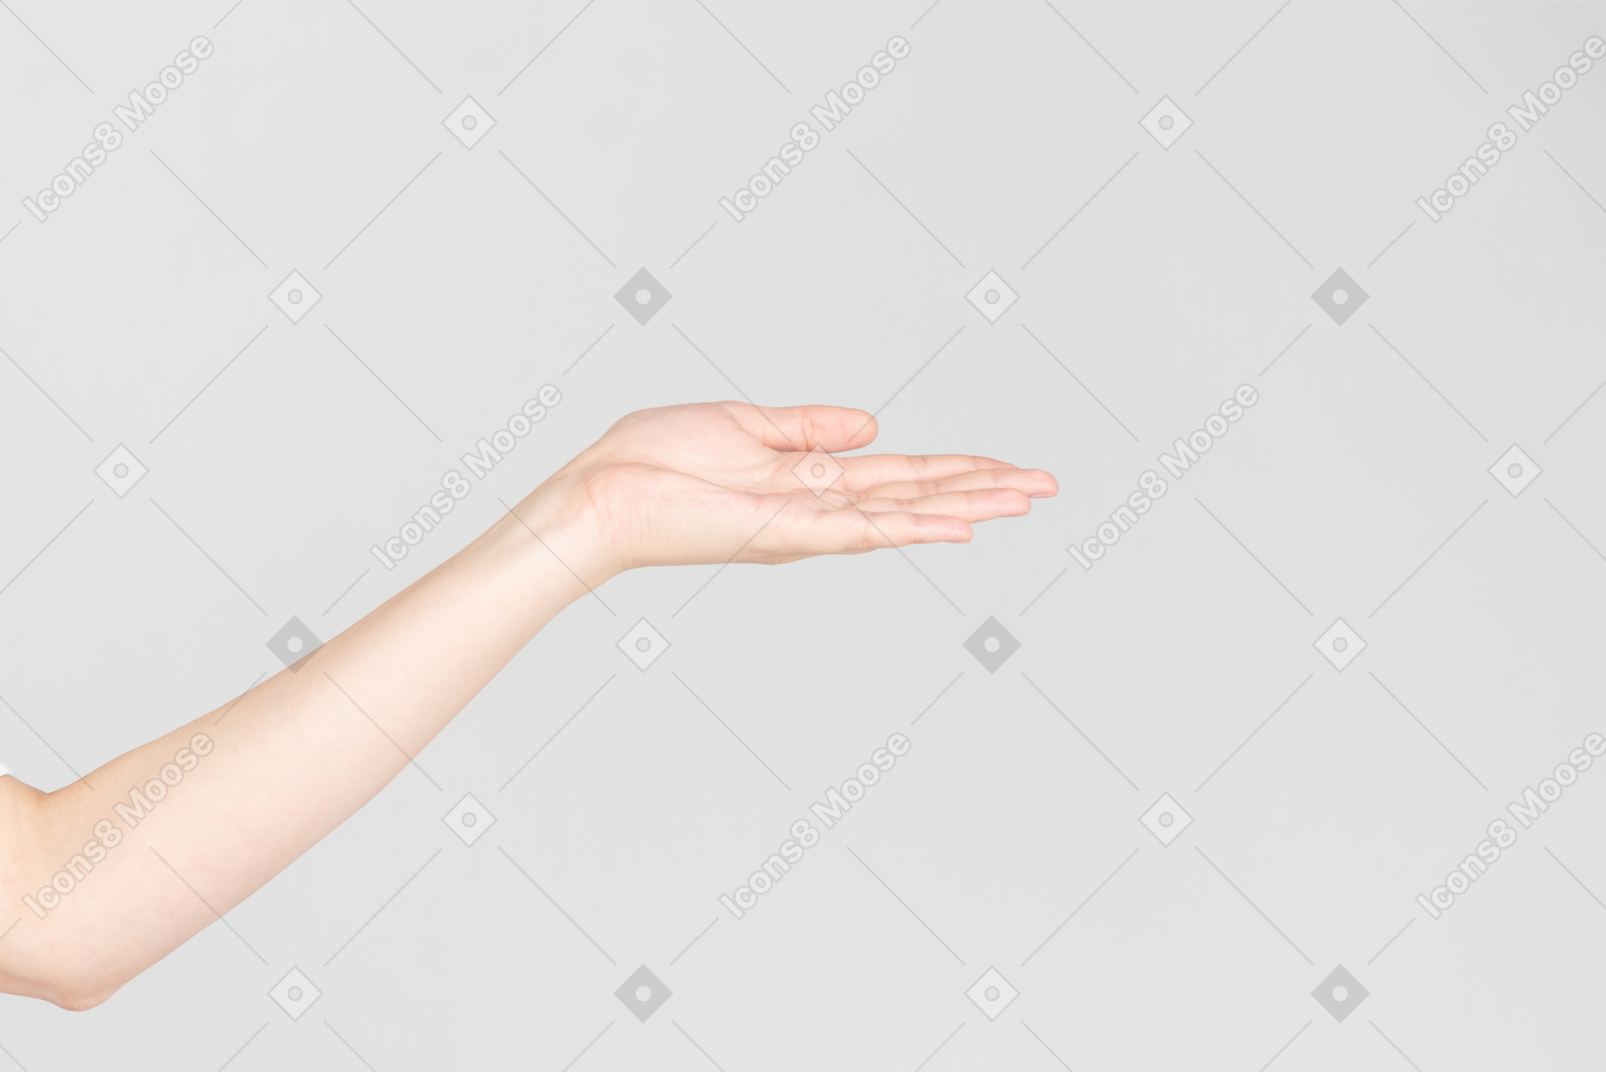 Regard de côté de main féminine montrant la paume de la main